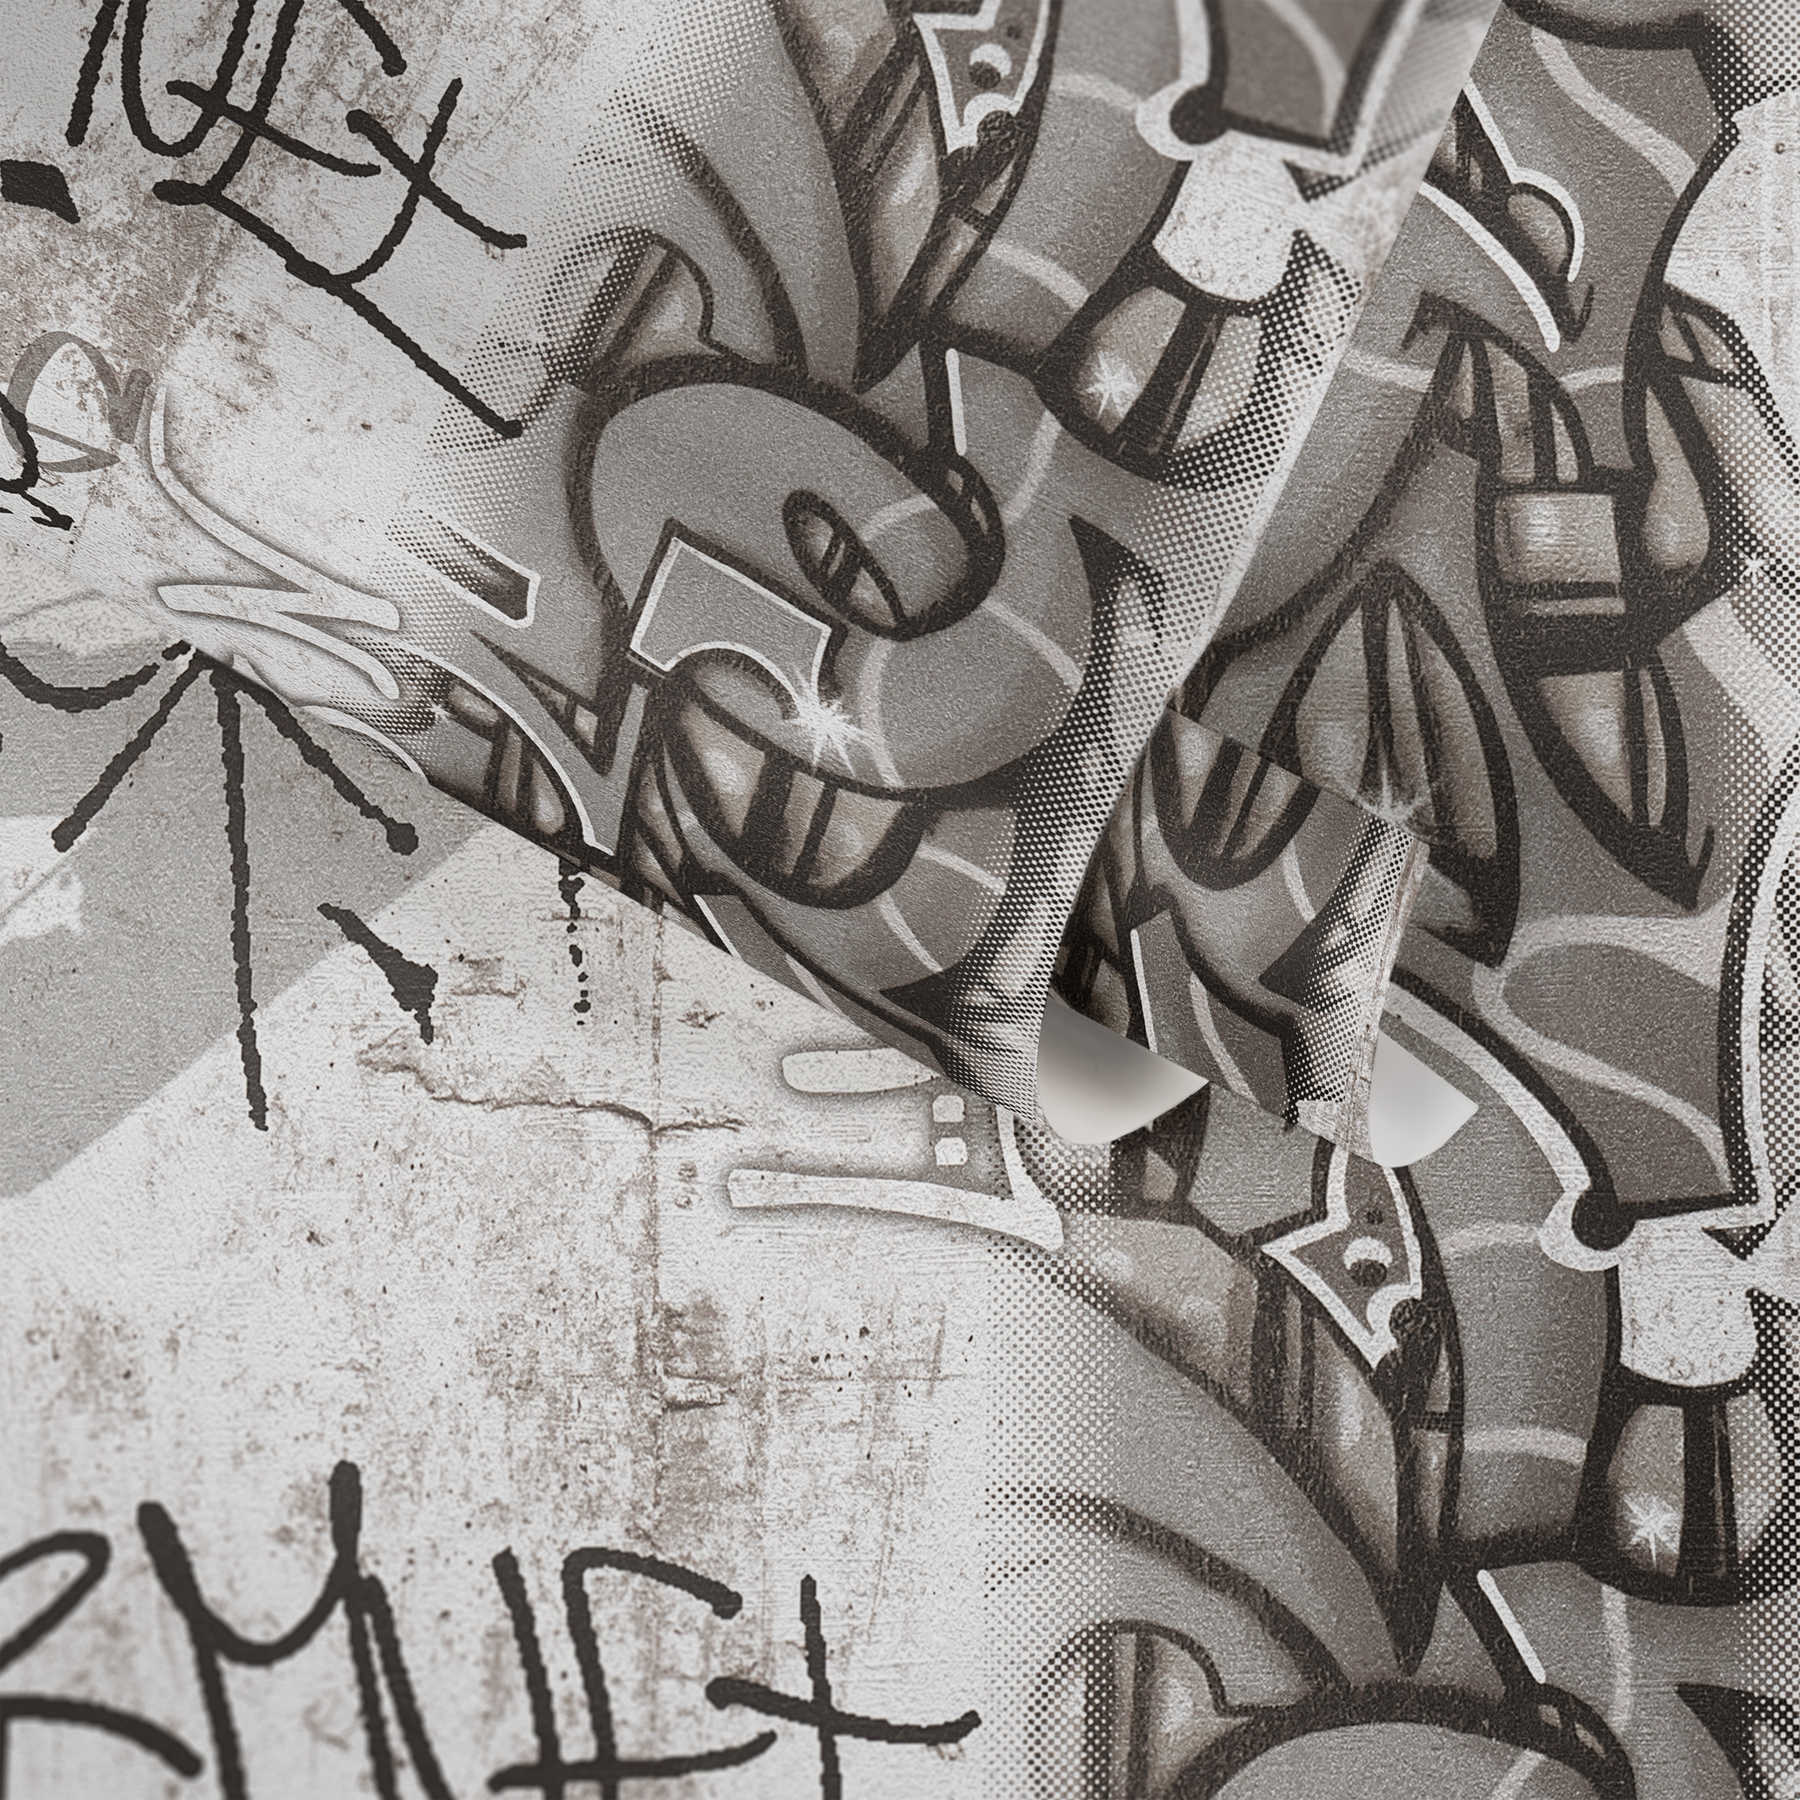             Papierbehang graffiti voor kinderkamer - grijs, zwart
        